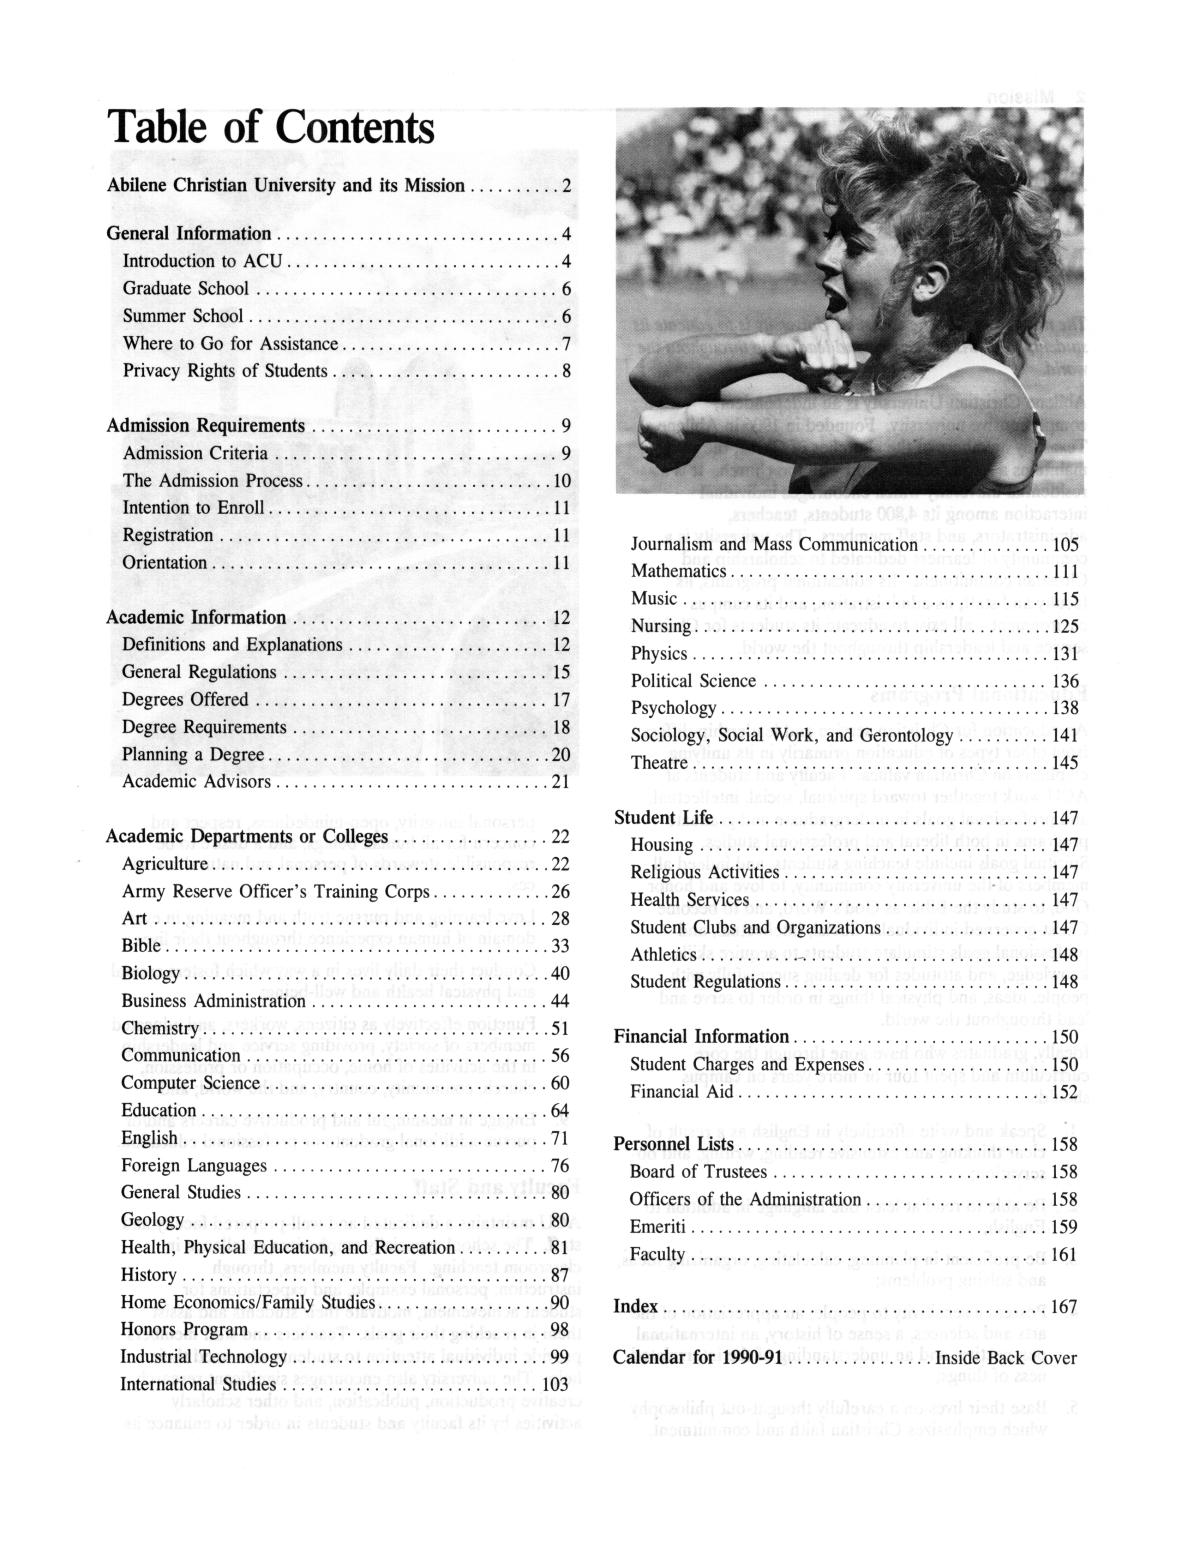 Catalog of Abilene Christian University, 1990-1991
                                                
                                                    1
                                                